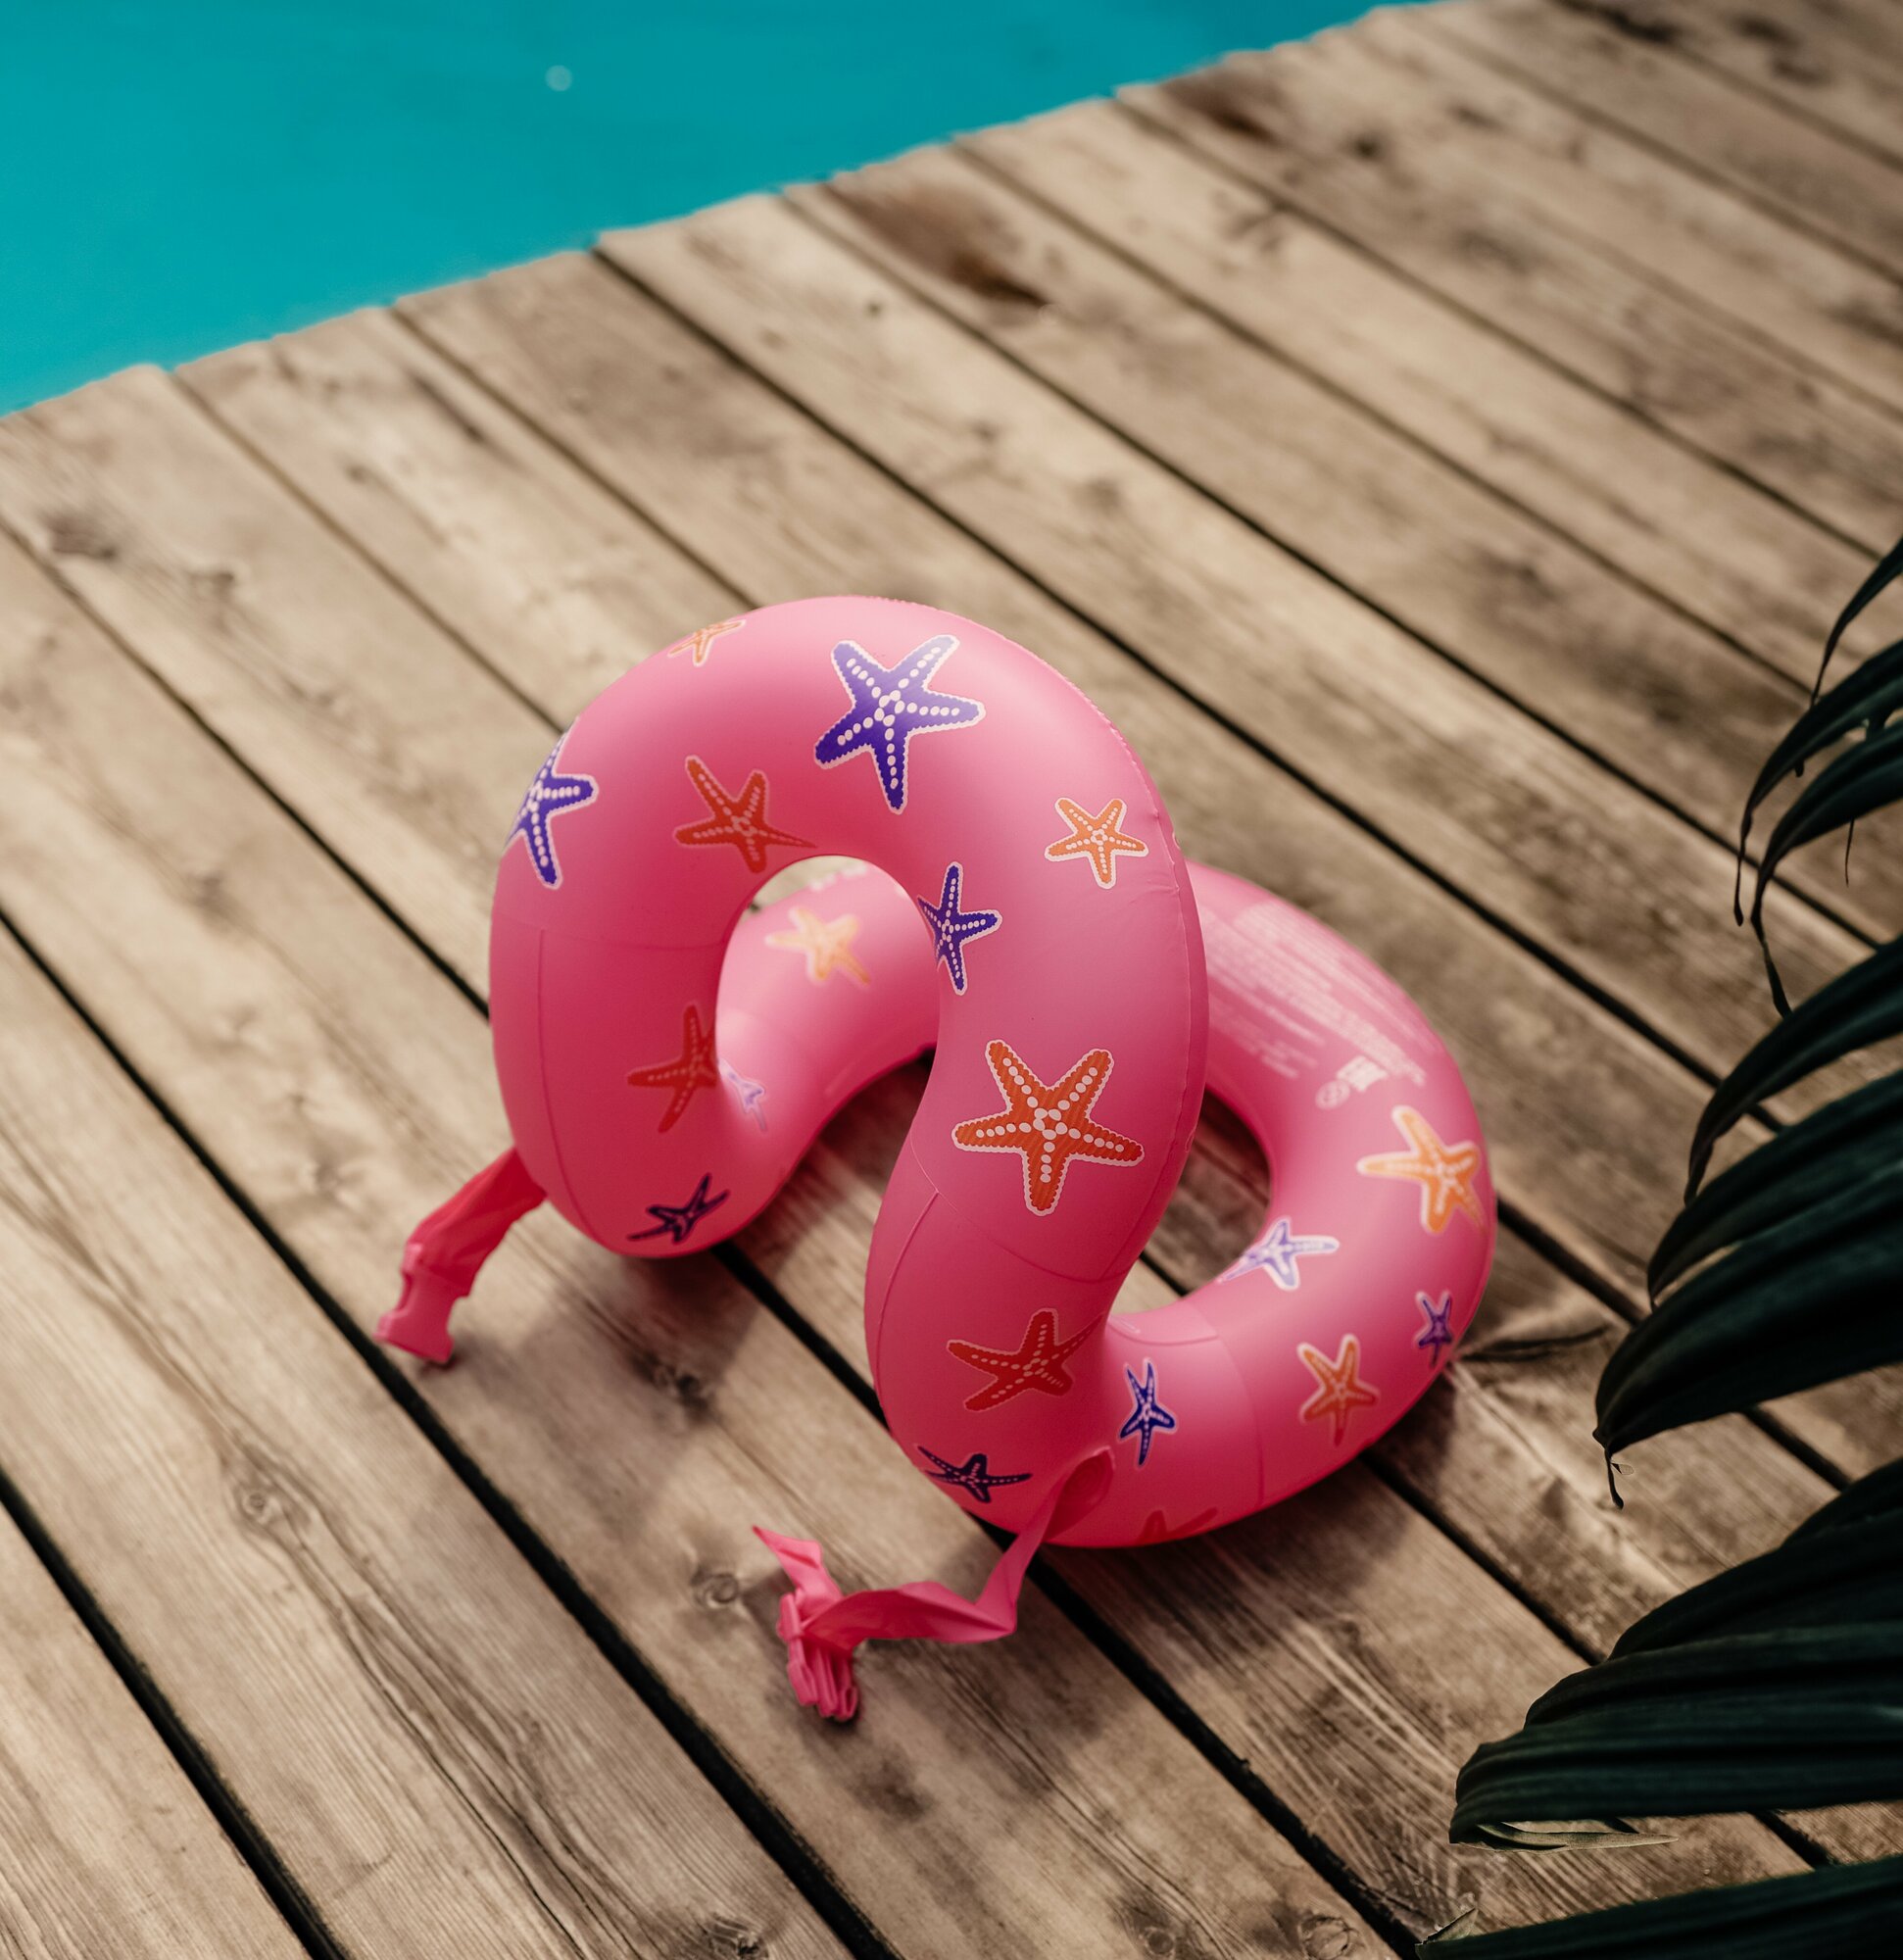 Жилет надувной для плавания Восьмерка размер S Розовый, арт. 950033-S